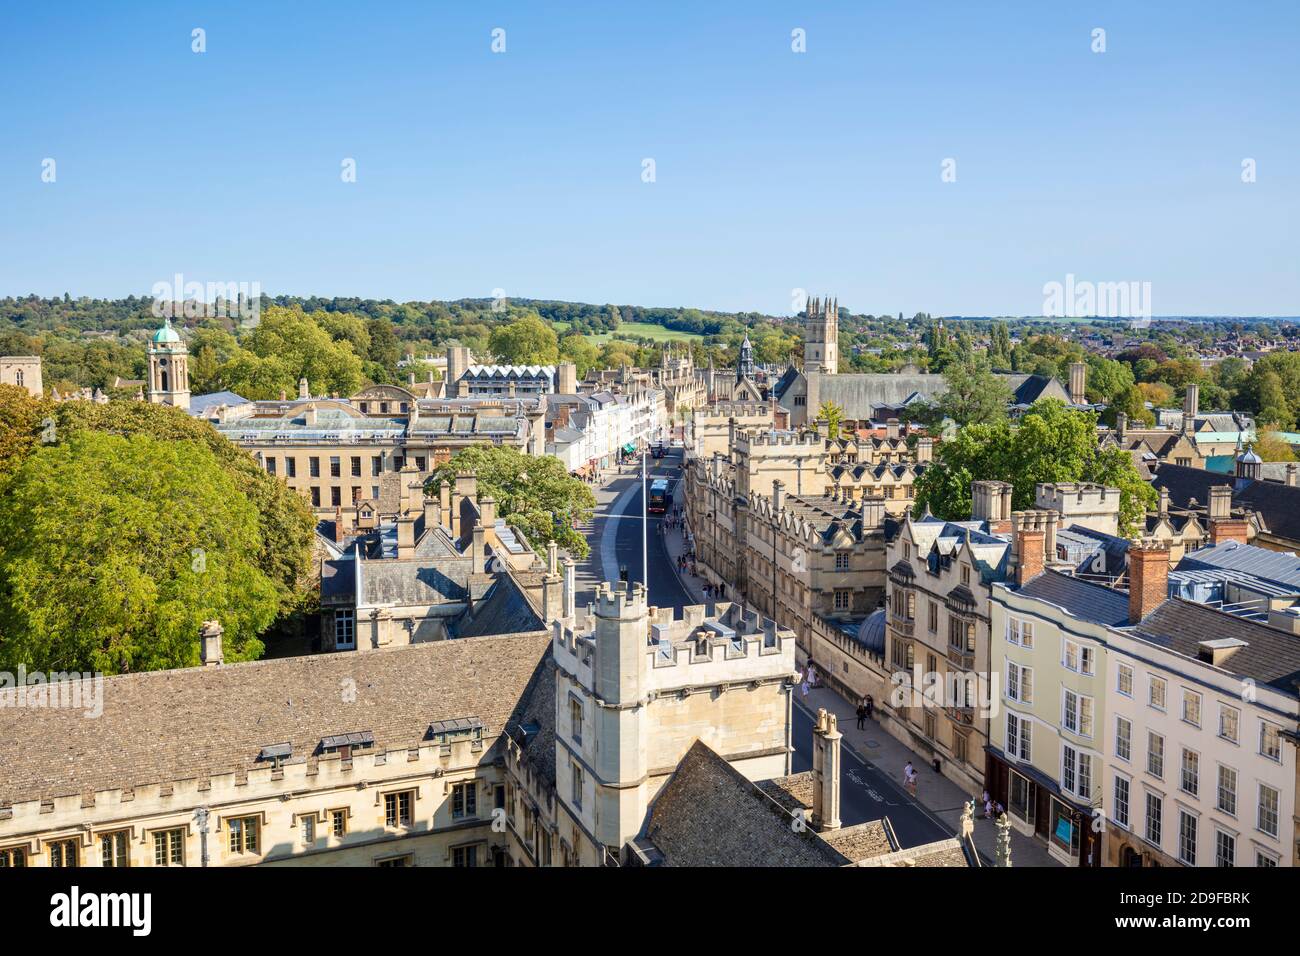 Vue aérienne de All Souls College Oxford et Oxford High street and Oxford Skyline Oxford Oxfordshire Angleterre Royaume-Uni GB Europe Banque D'Images